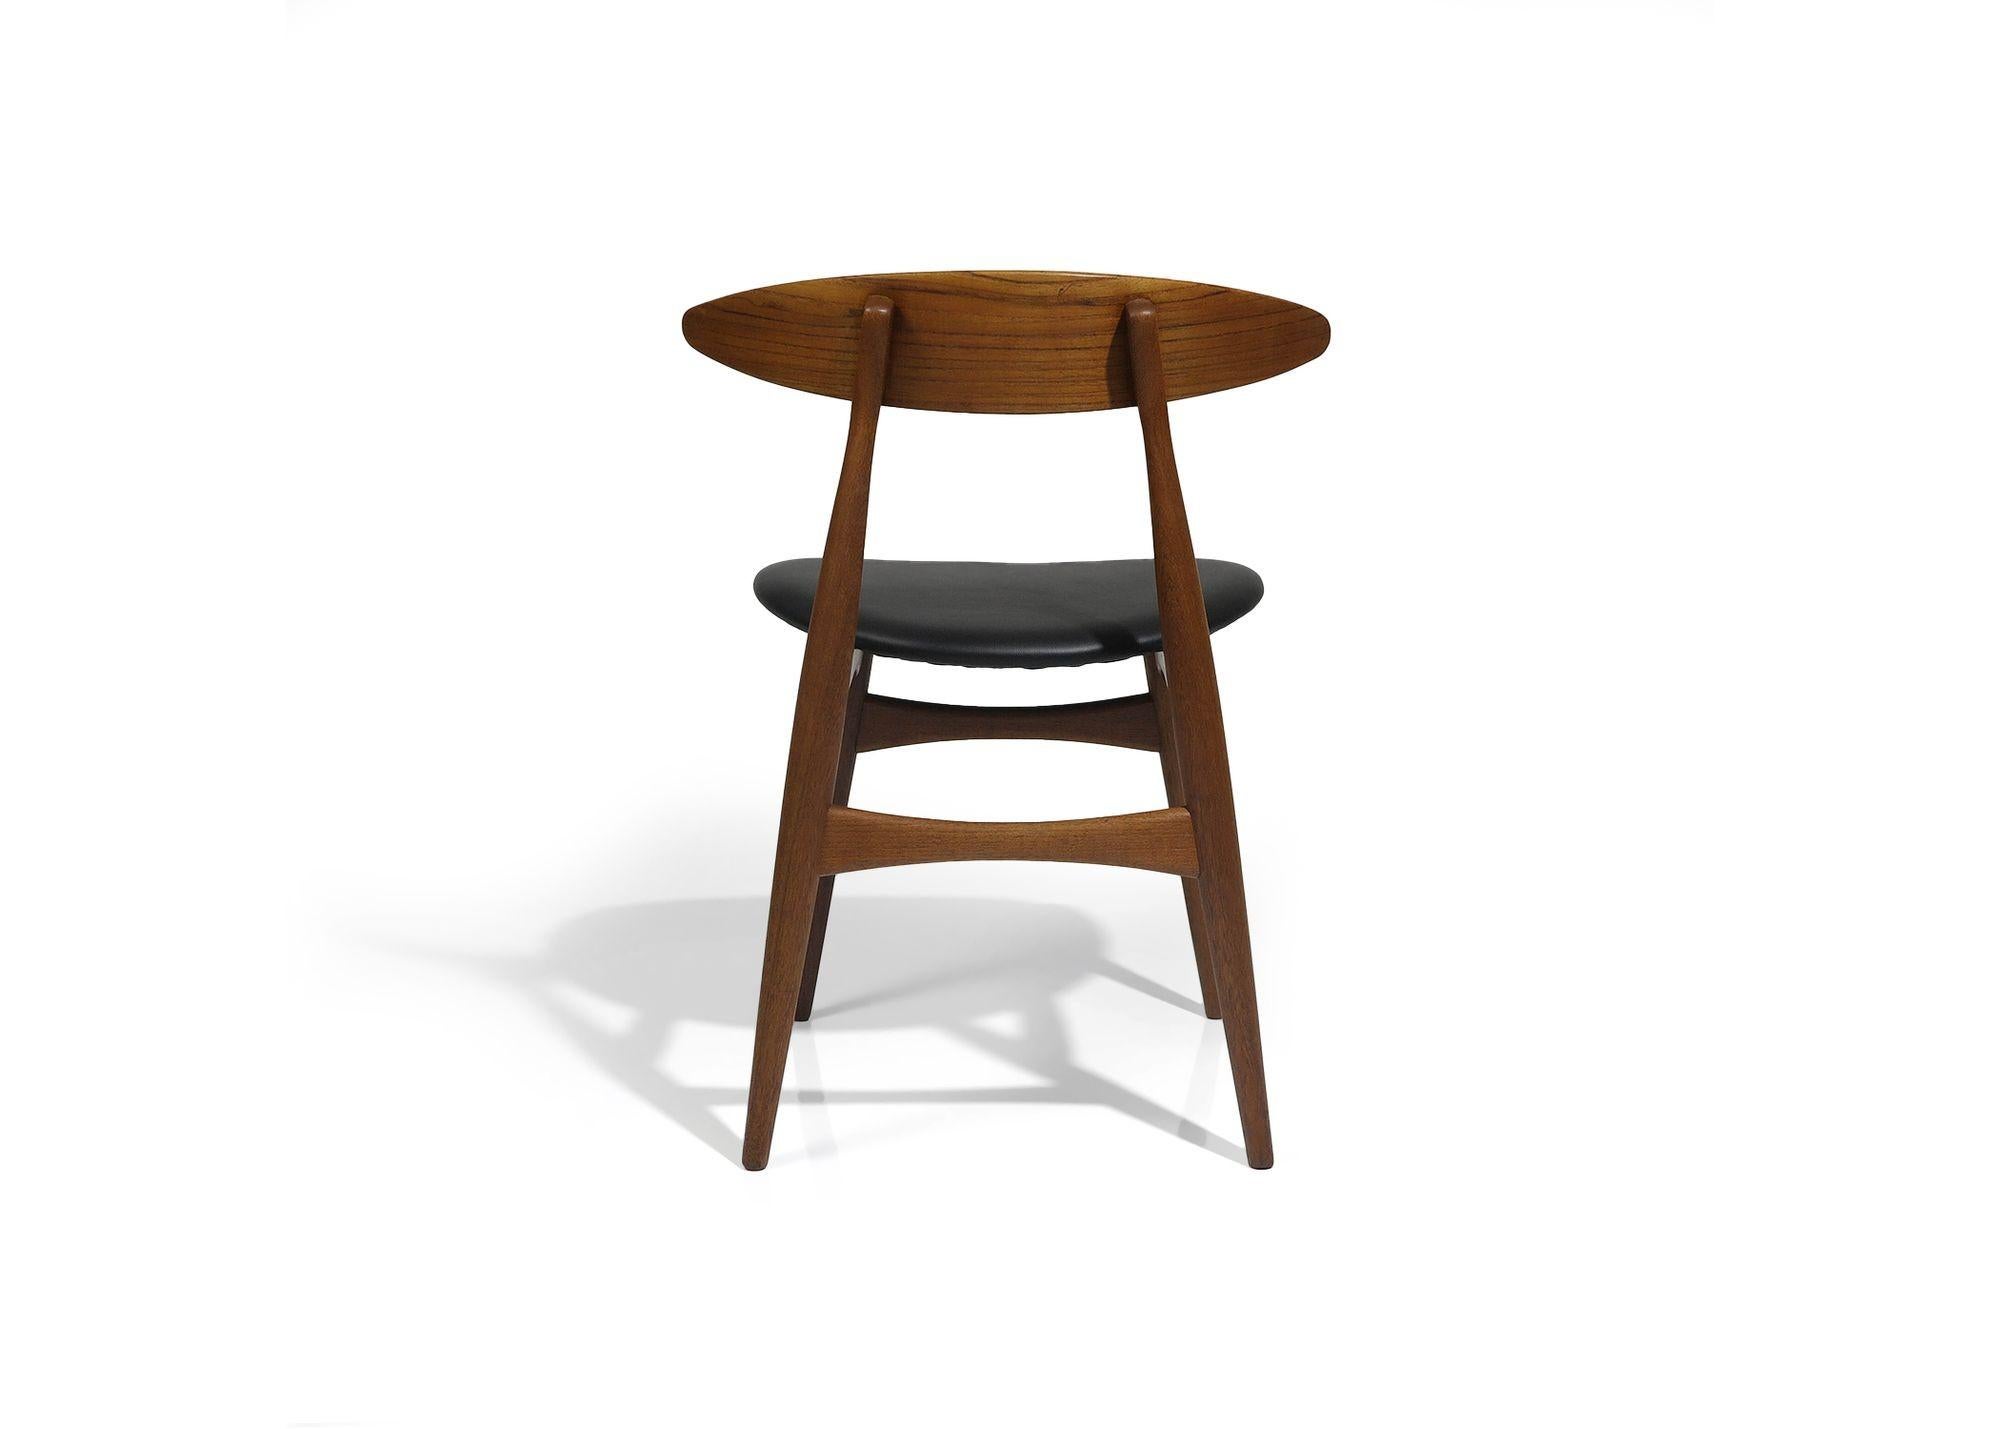 Oiled Hans J. Wegner Danish Teak Dining Chairs CH 33 for Carl Hansen For Sale